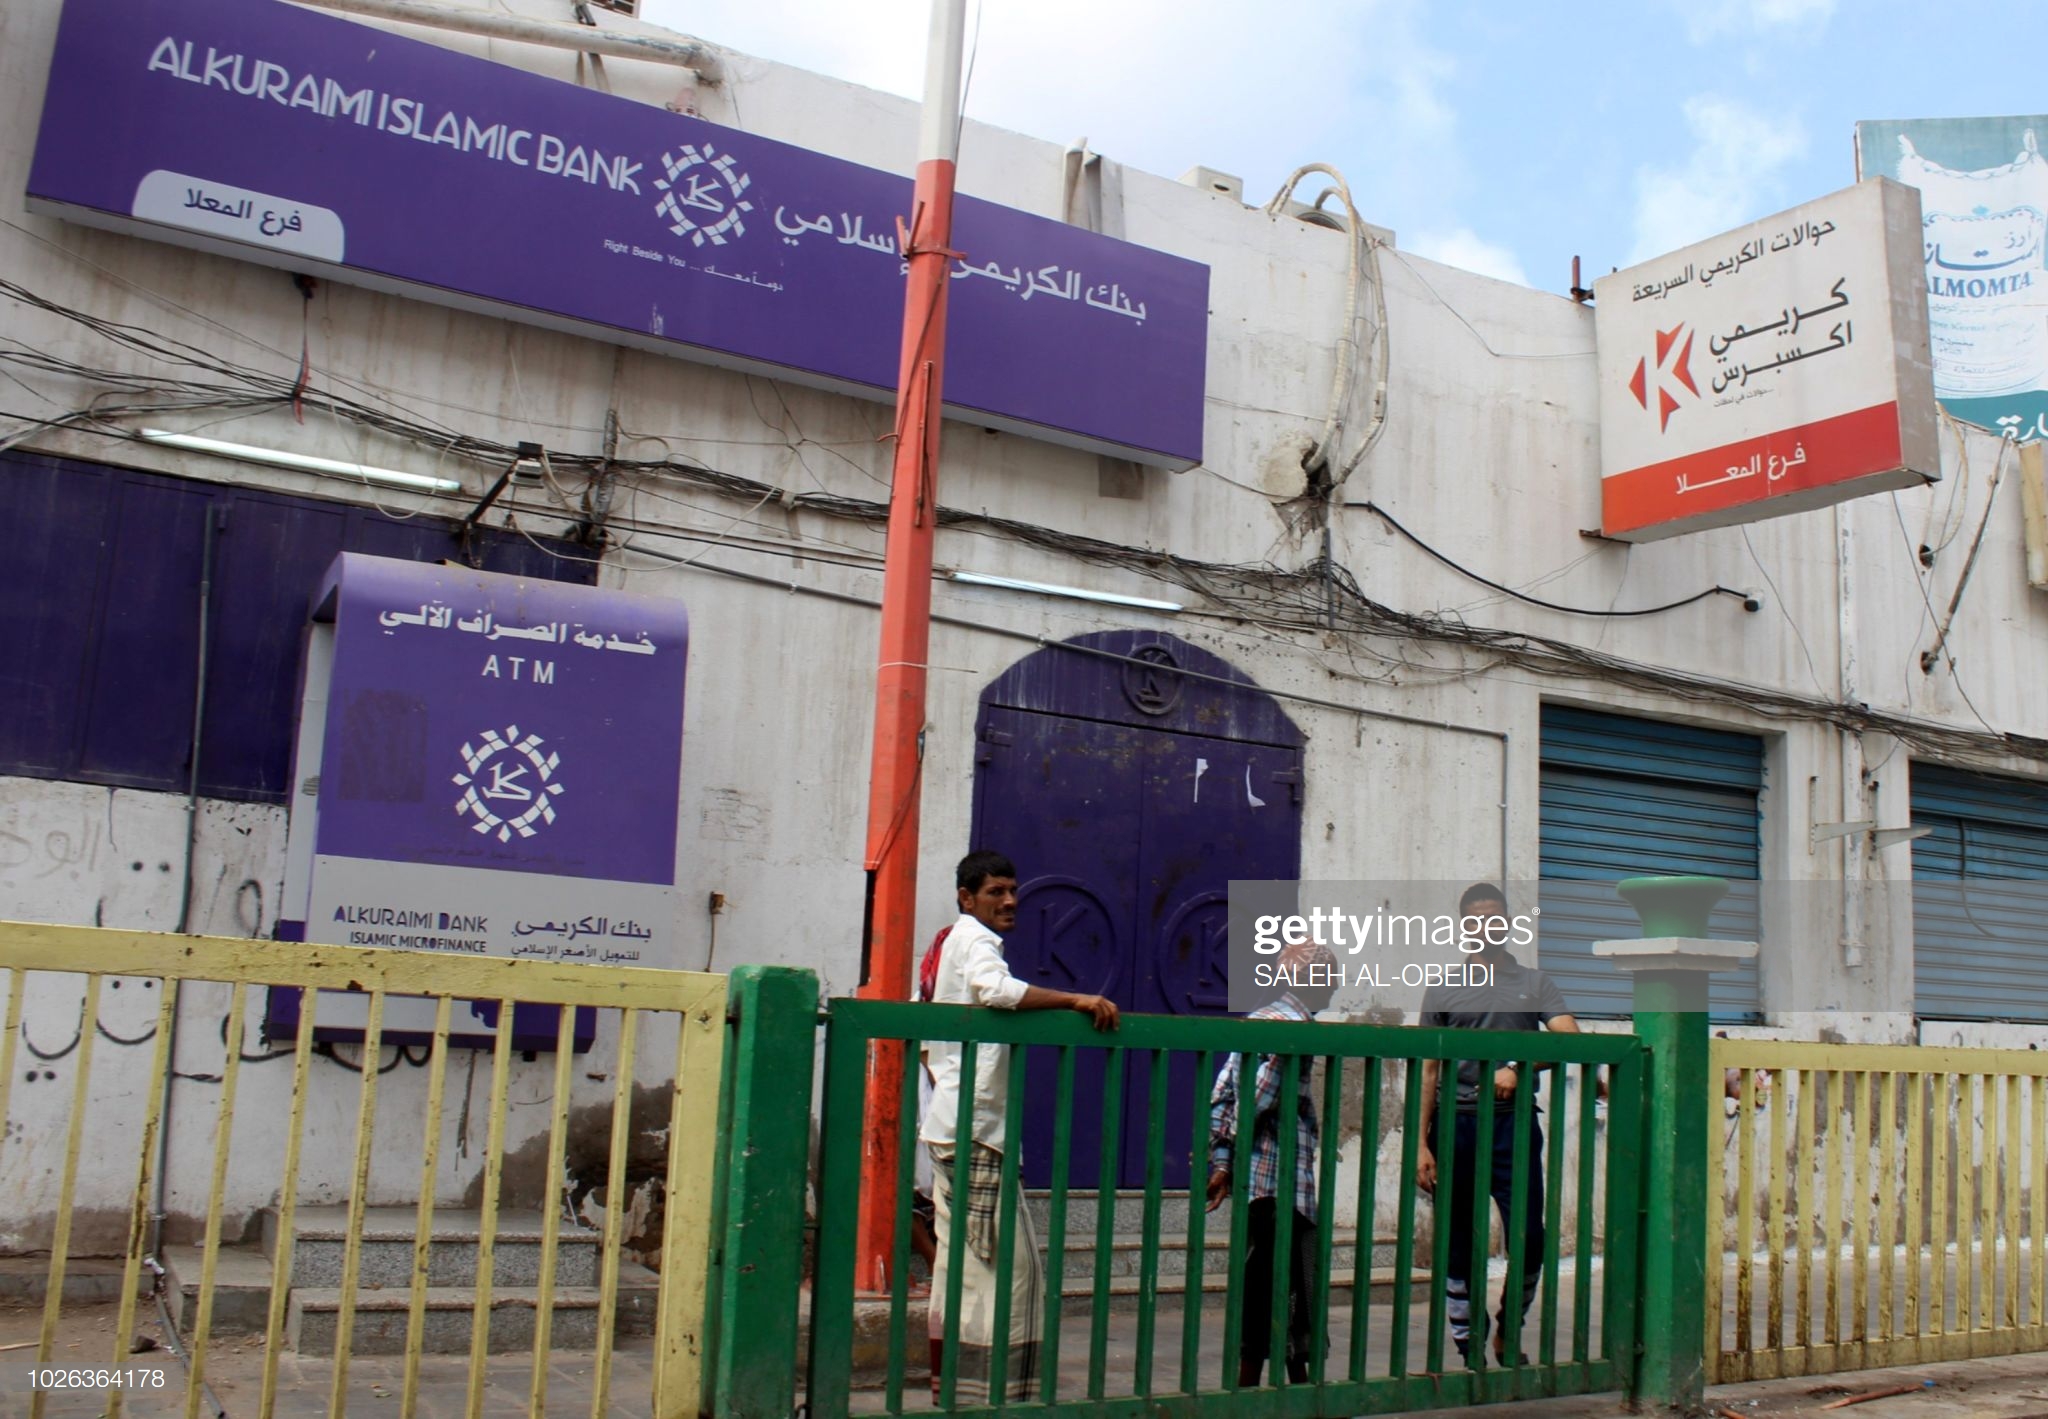 تصویری از یک بانک در یمن!